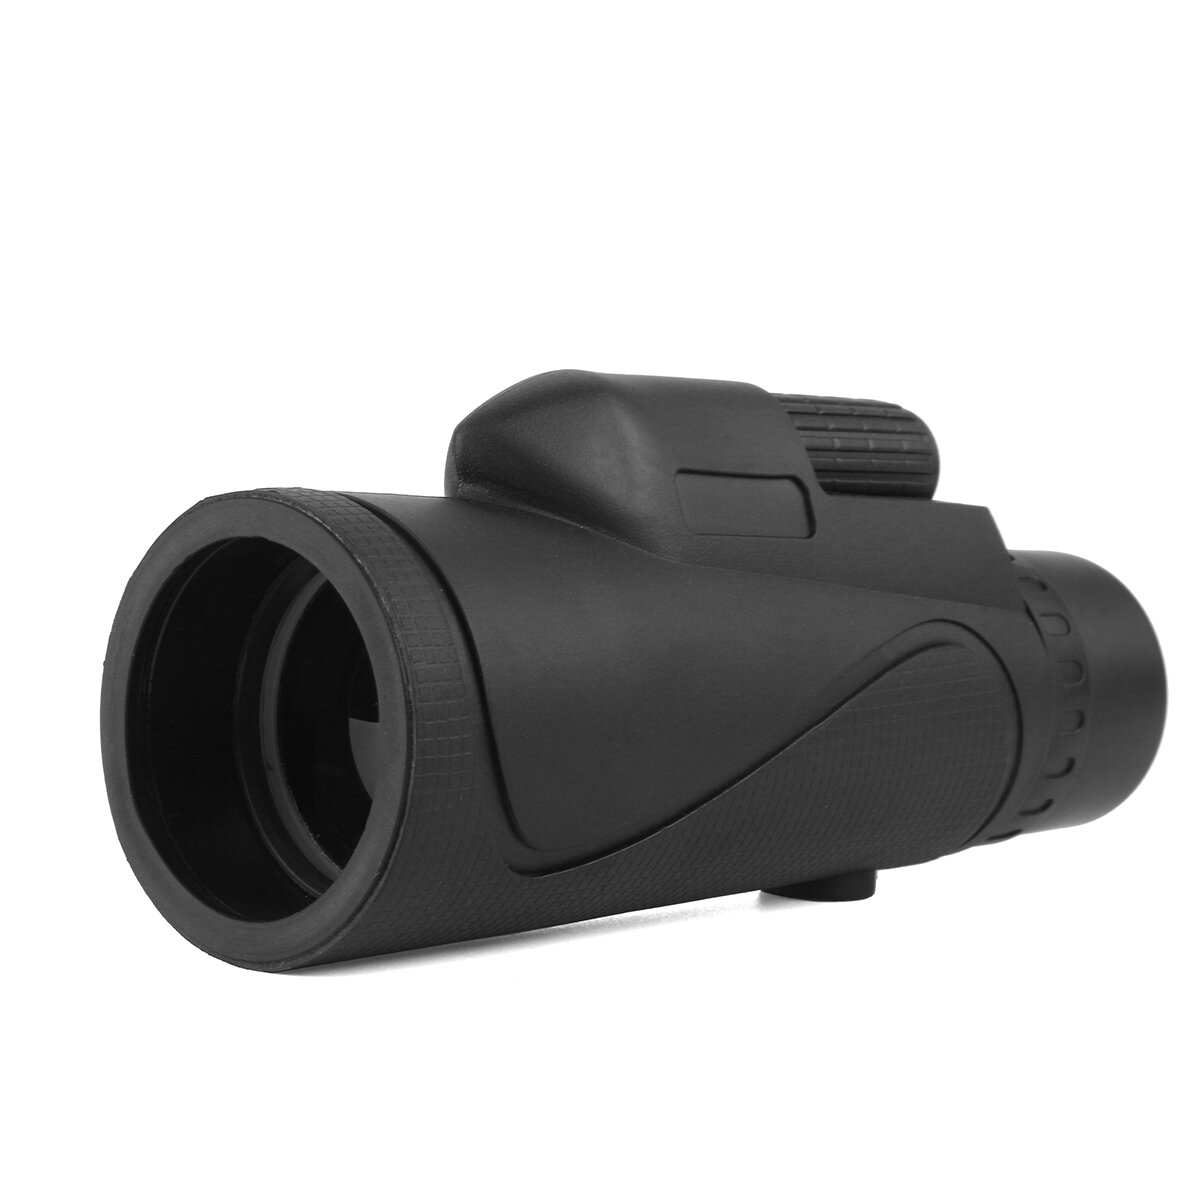 Objectif monoculaire zoom 40x60 étanche pour vision diurne et nocturne, télescope portable idéal pour le camping et les voyages.